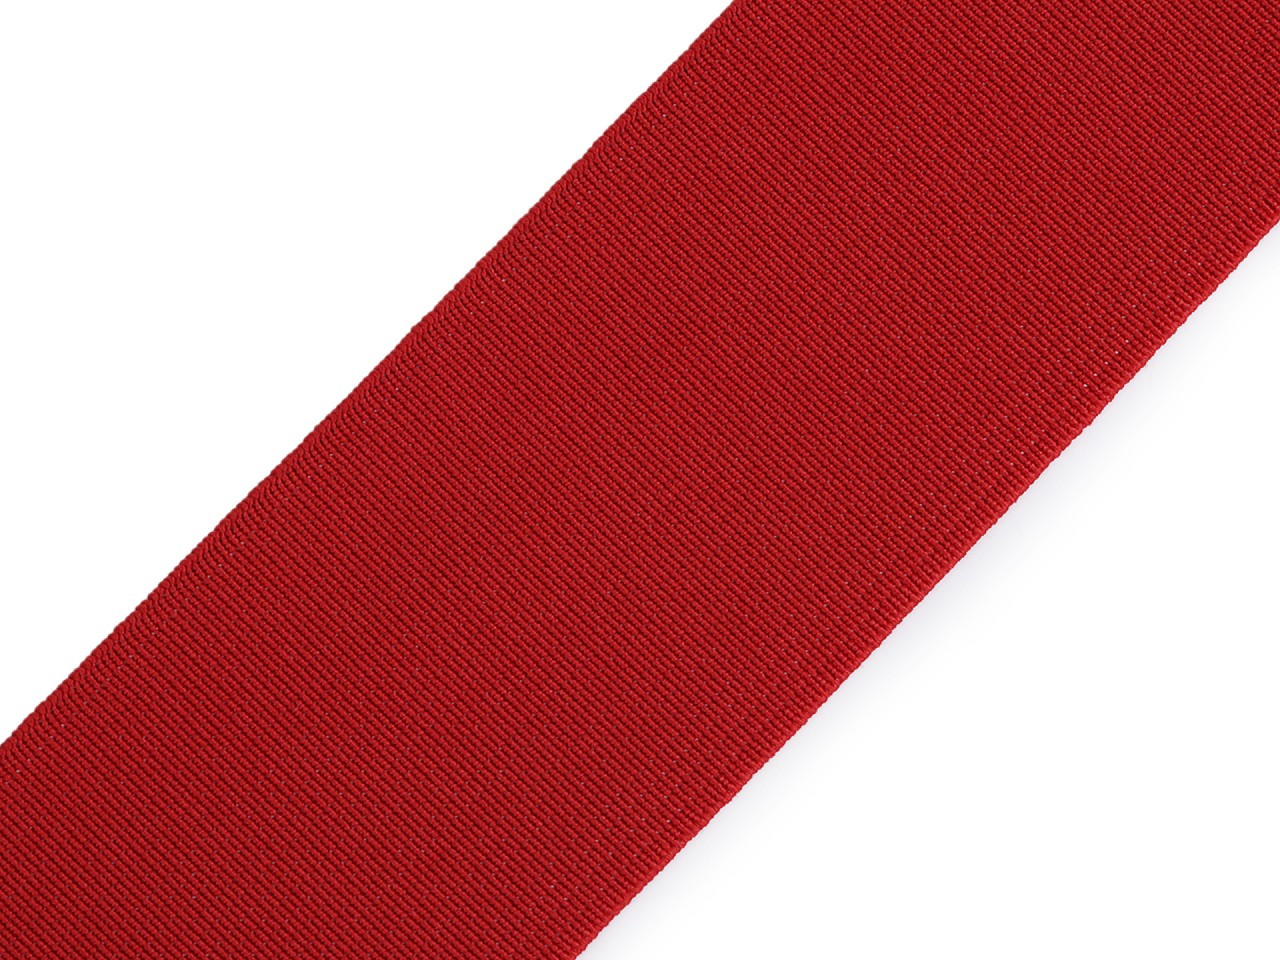 Pruženka hladká šíře 50 mm tkaná barevná, barva 7502 červená